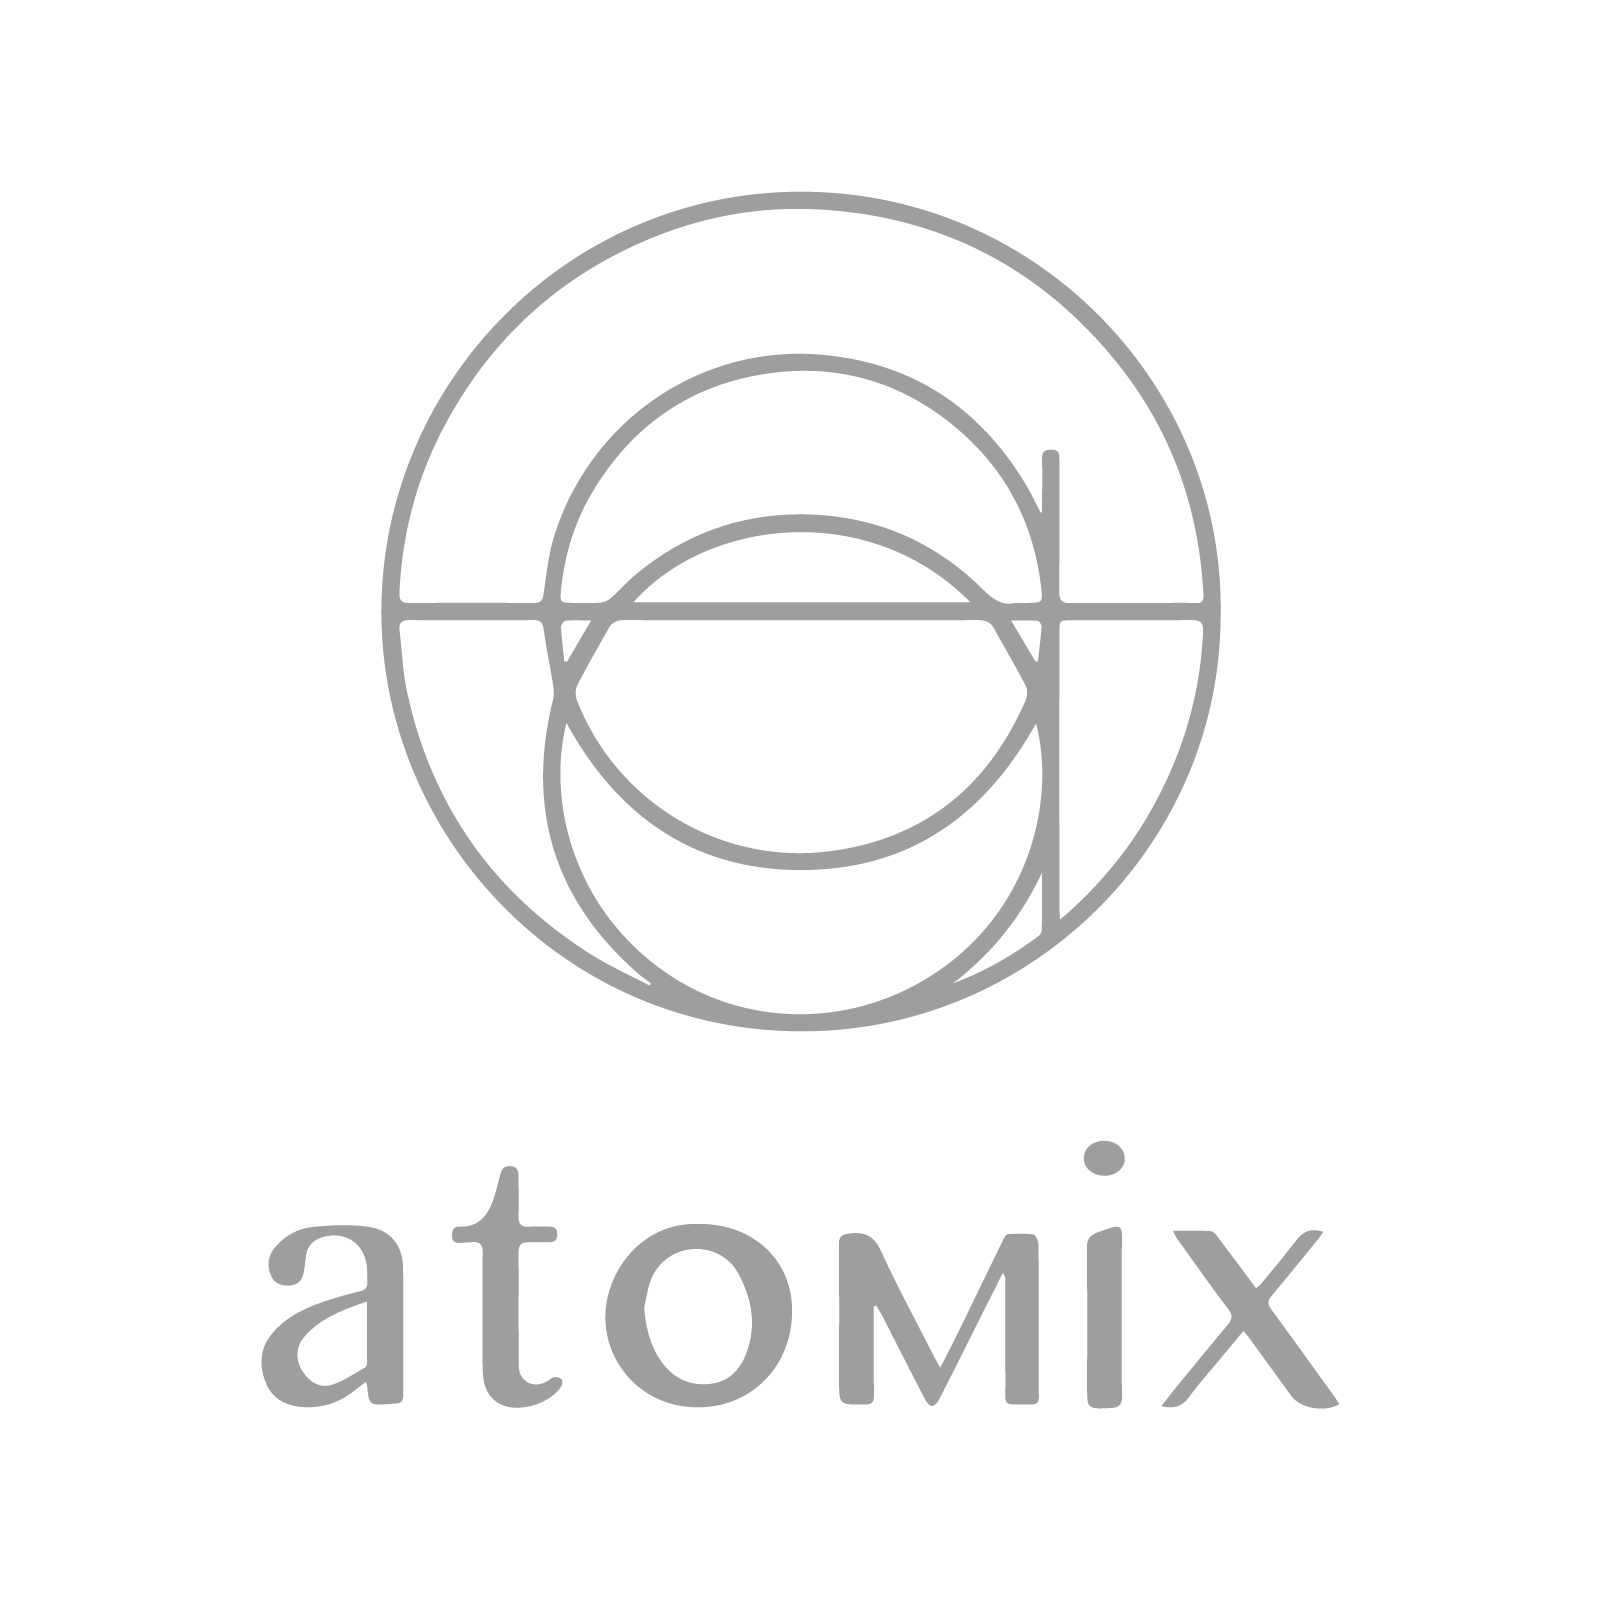 Press Logos_Atomix.png